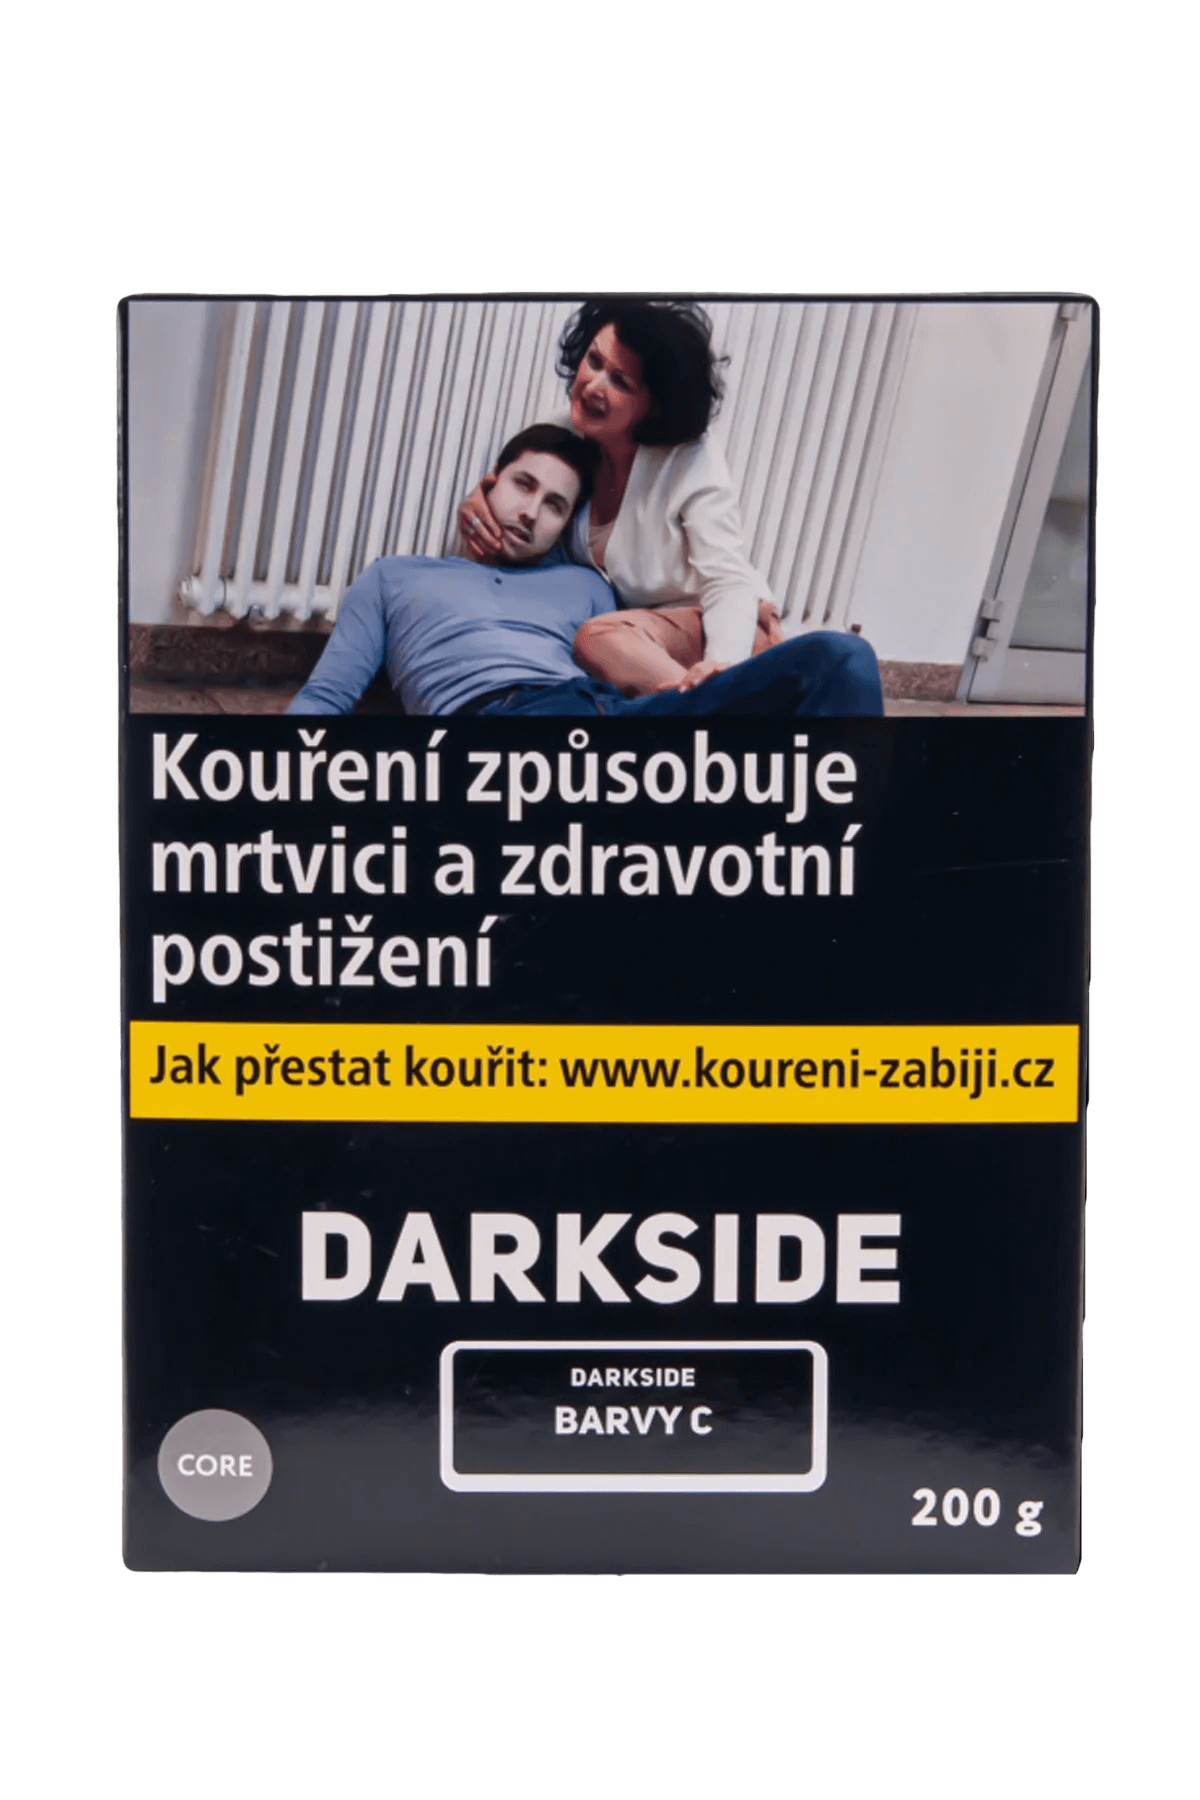 Tabák - Darkside Core 200g - Barvy C